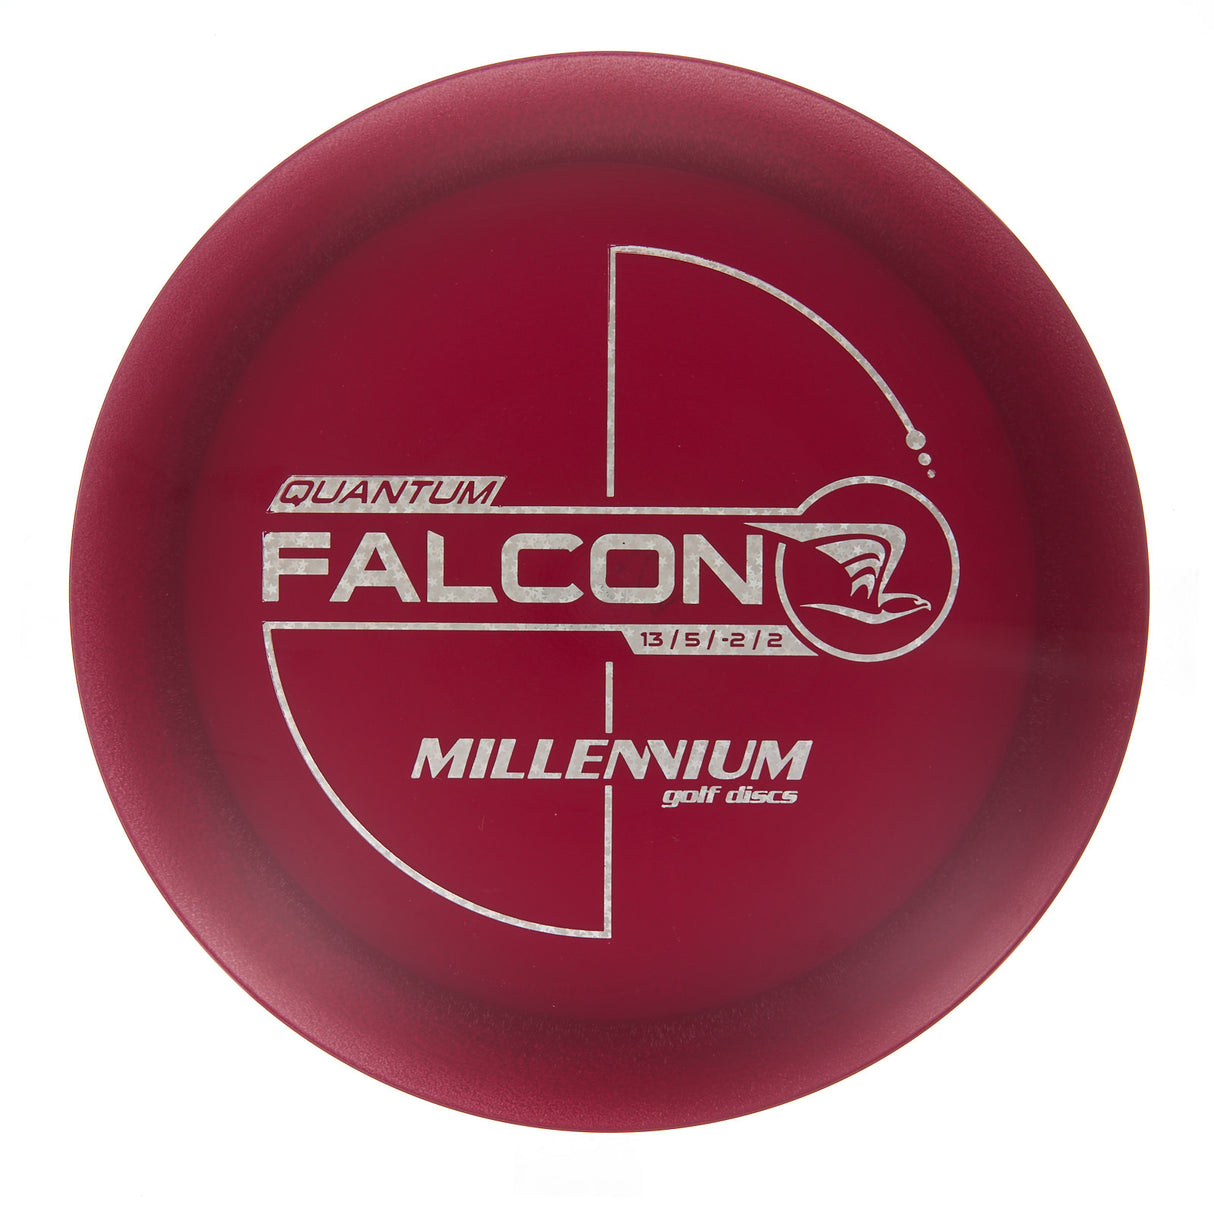 Millennium Falcon - Quantum 169g | Style 0001